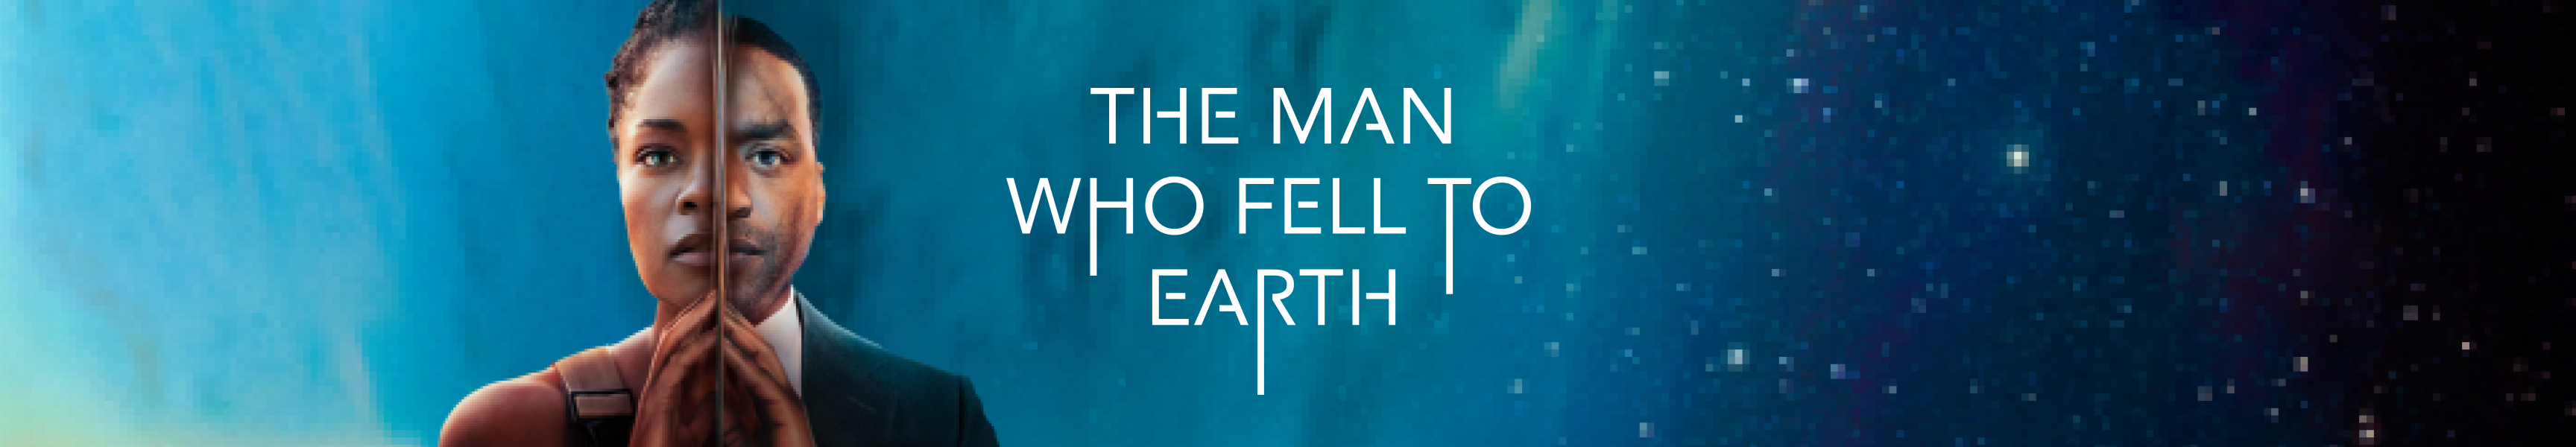 Der Mann, der auf die Erde fiel